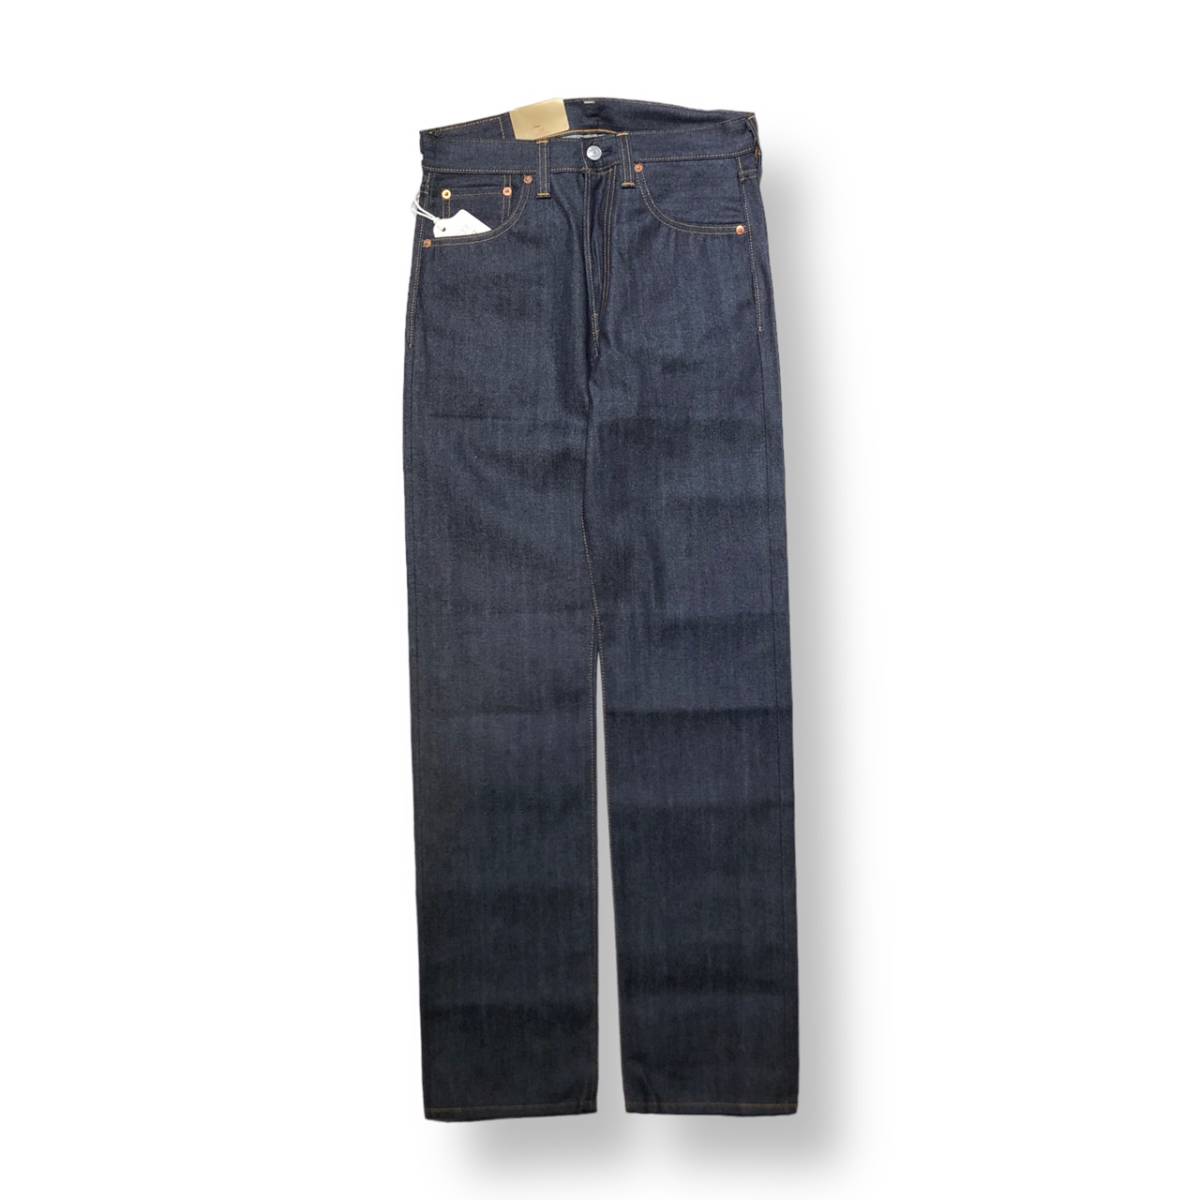 LEVI’S VINTAGE CLOTHING 501XX denim jeans 1947年モデル 47501-0224 デニム ジーンズ W30 リーバイス ビンテージクロージング_画像1